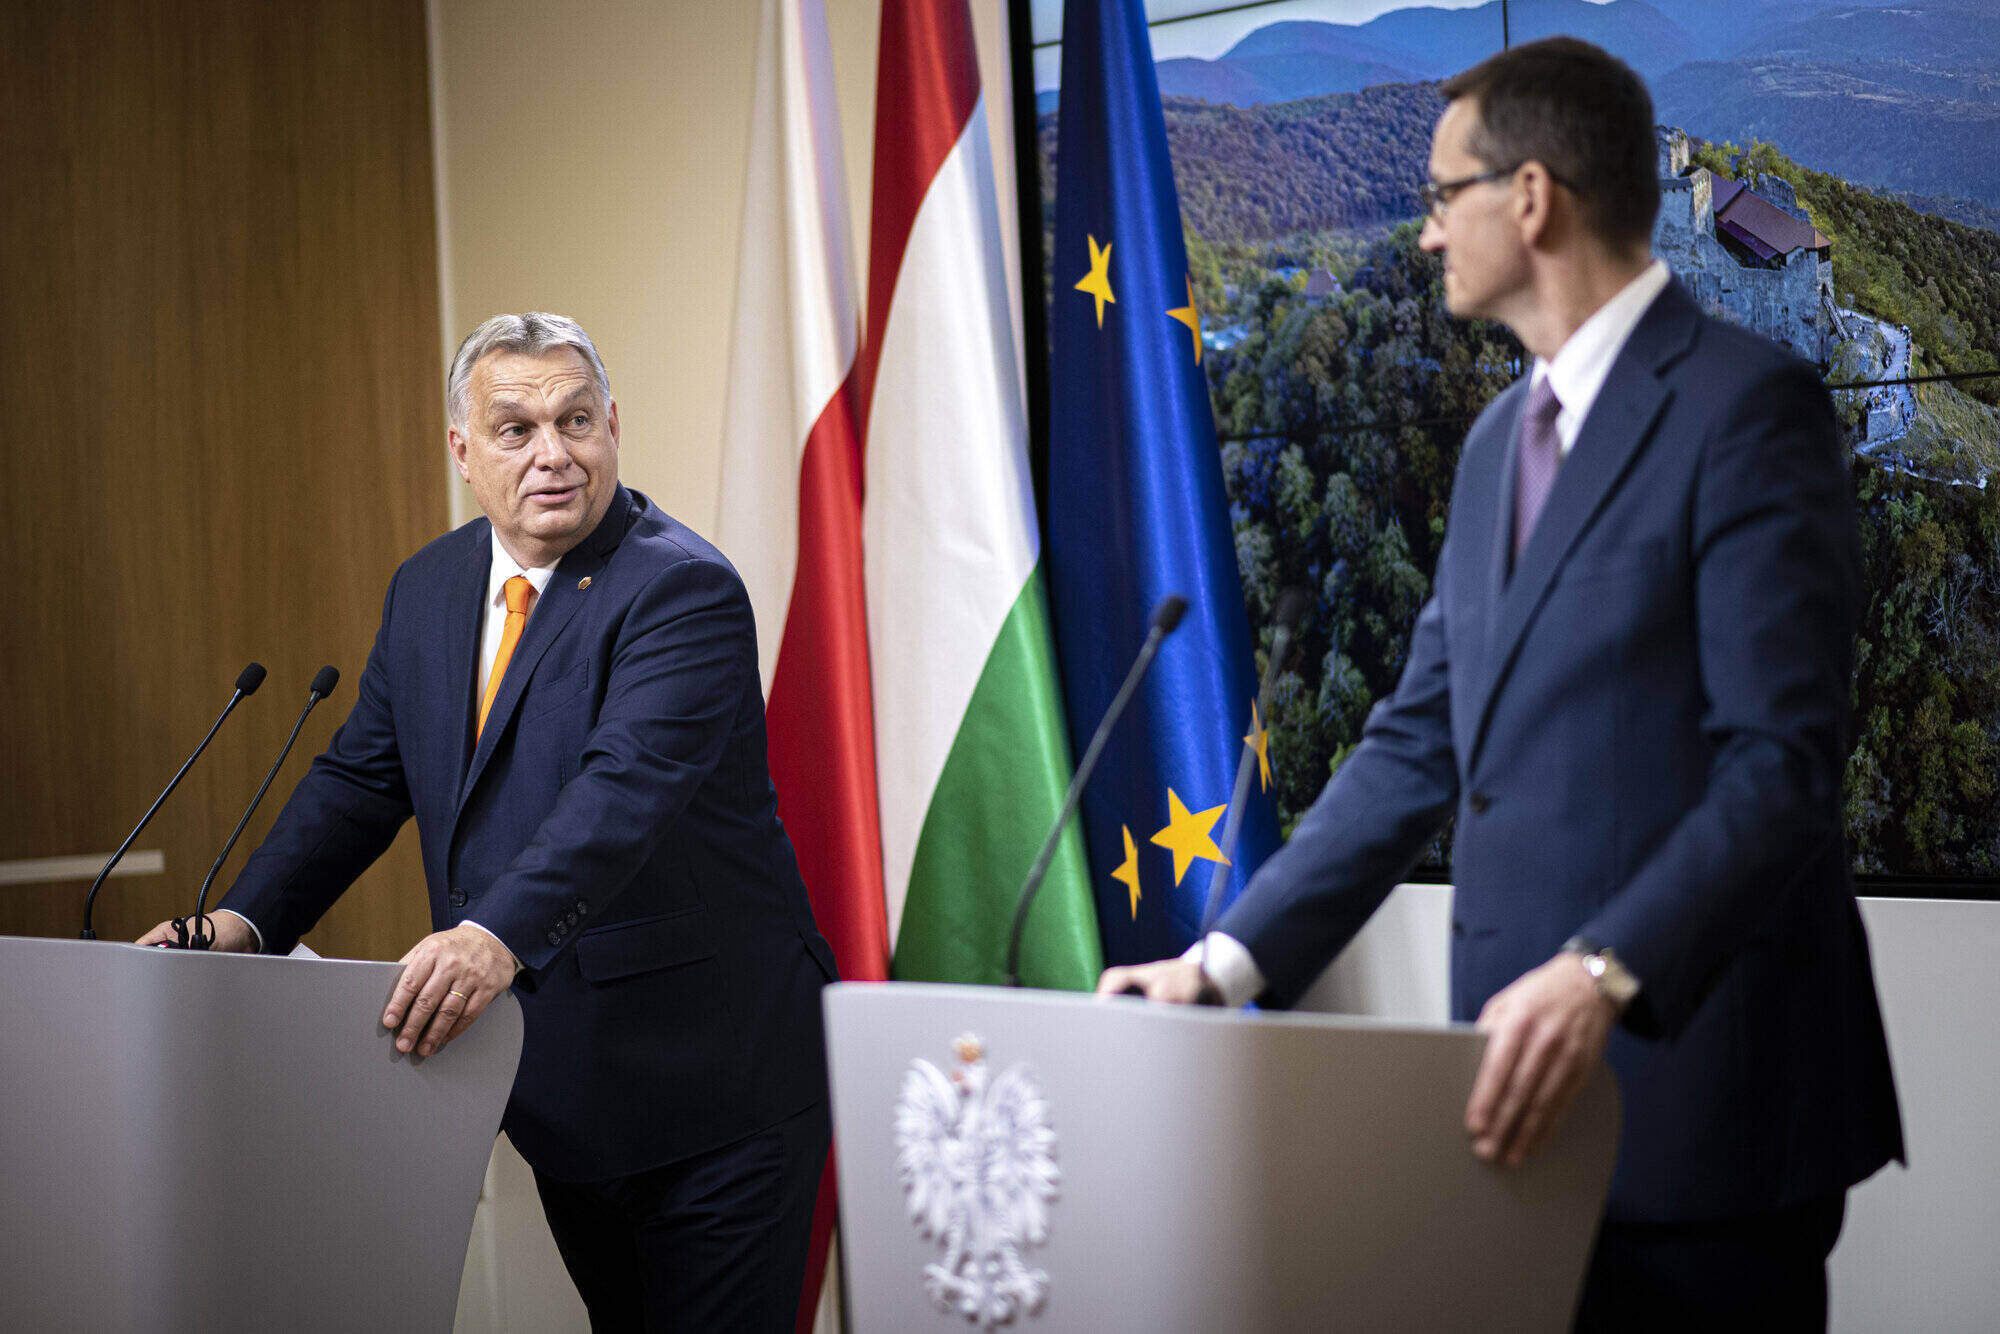 orbán morawiecki veto al presupuesto de la ue